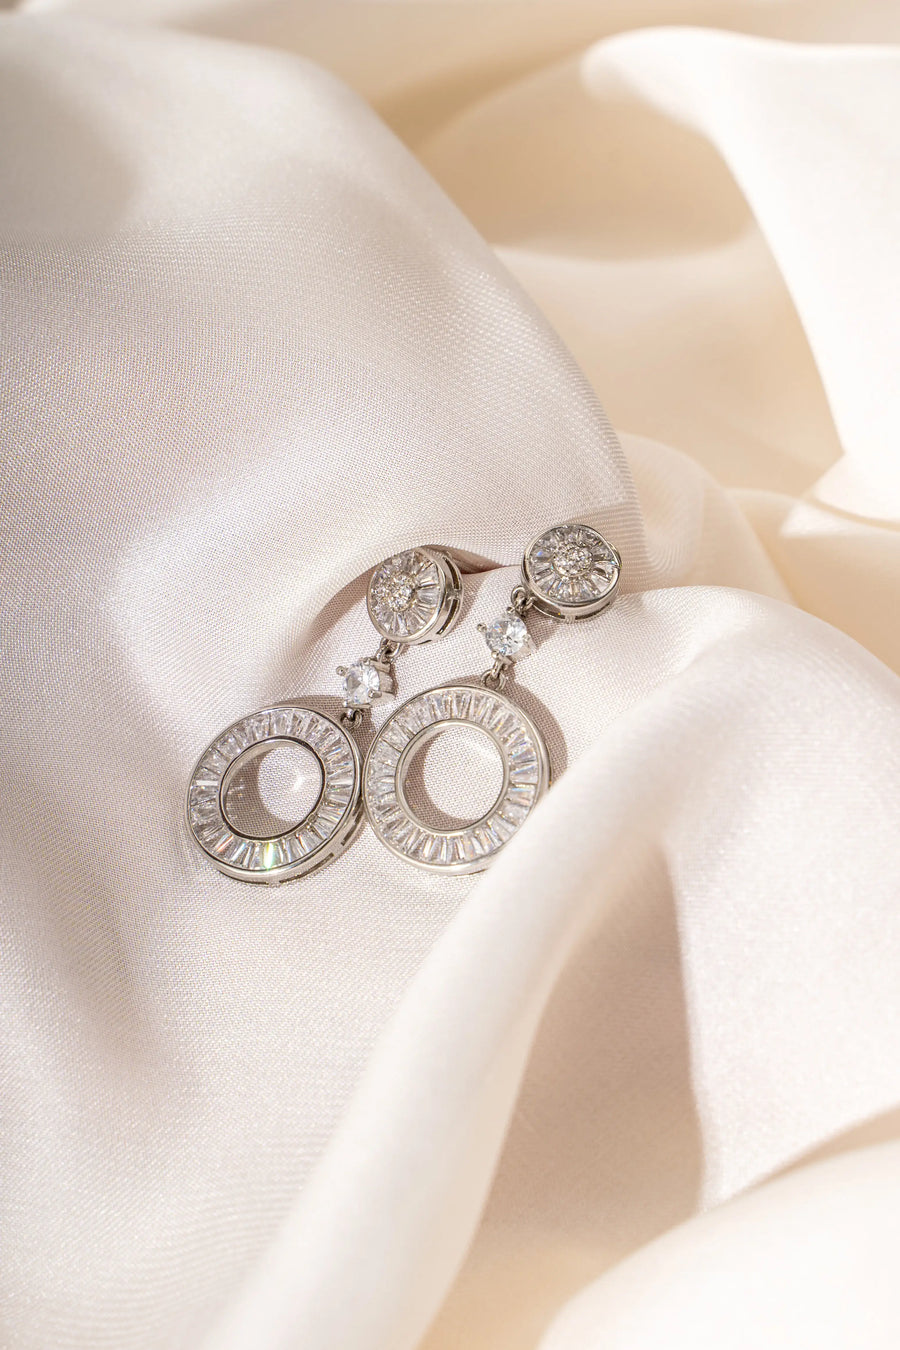 Sparkling Silver Zirconia Stud Earrings